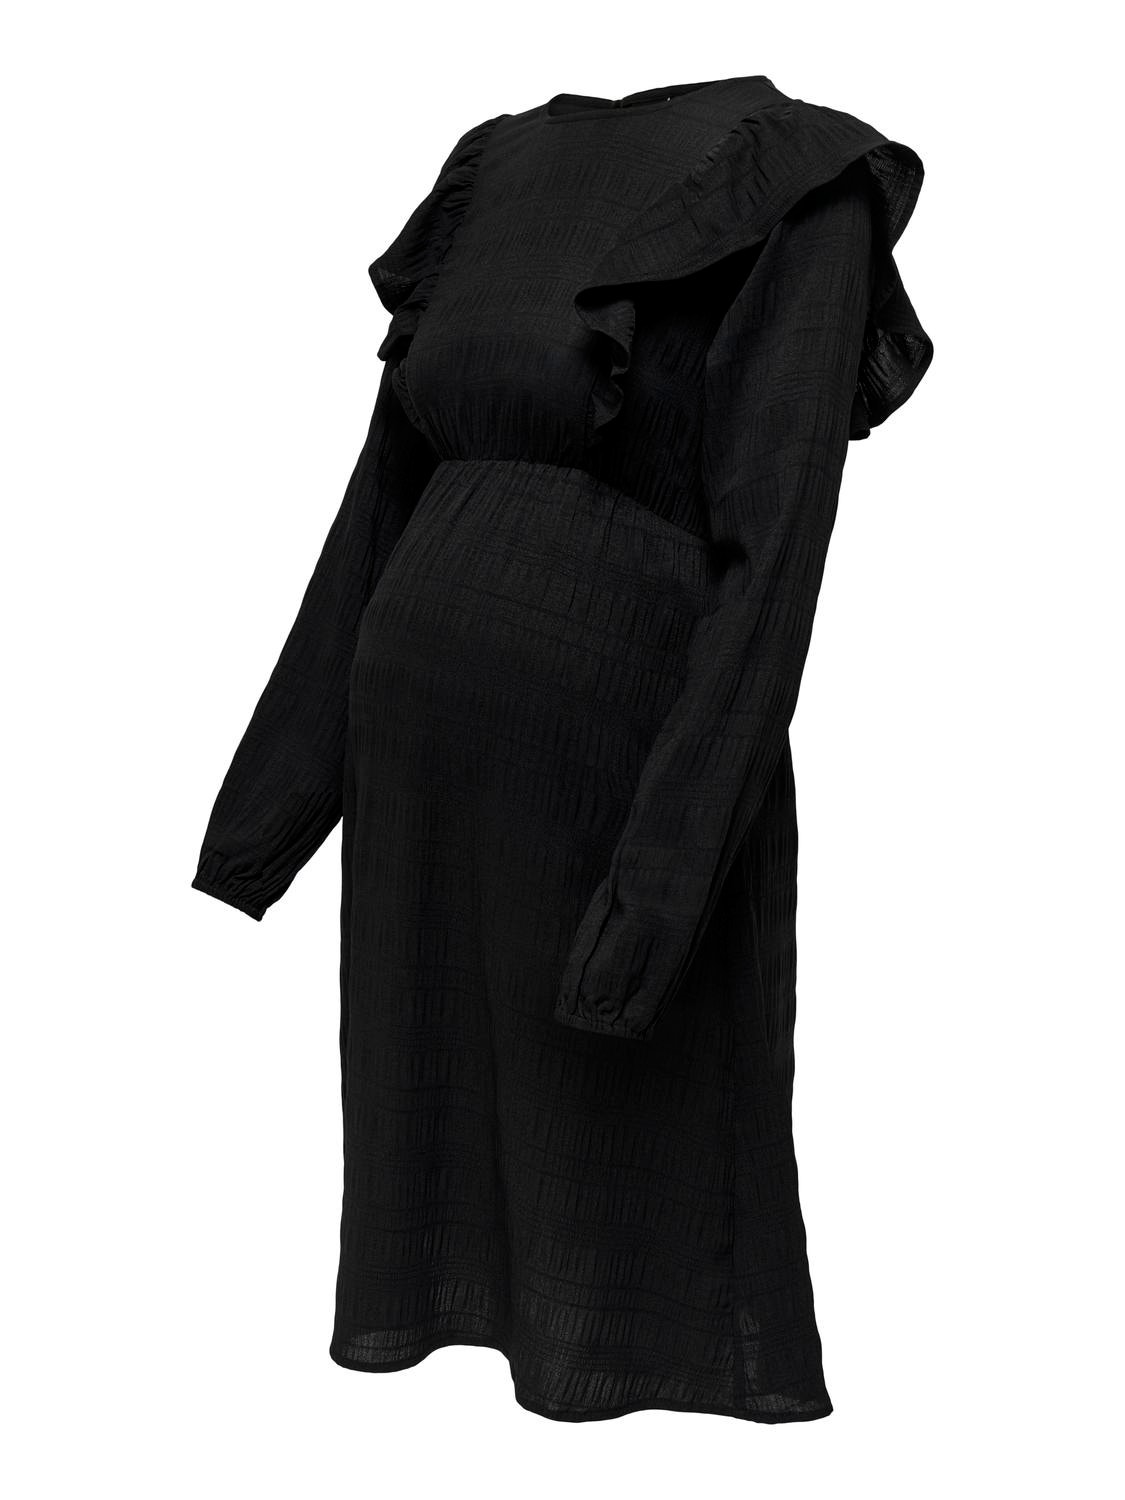 ONLY Vestito corto Regular Fit Paricollo Premaman Polsini elasticizzati Maniche voluminose -Black - 15326973